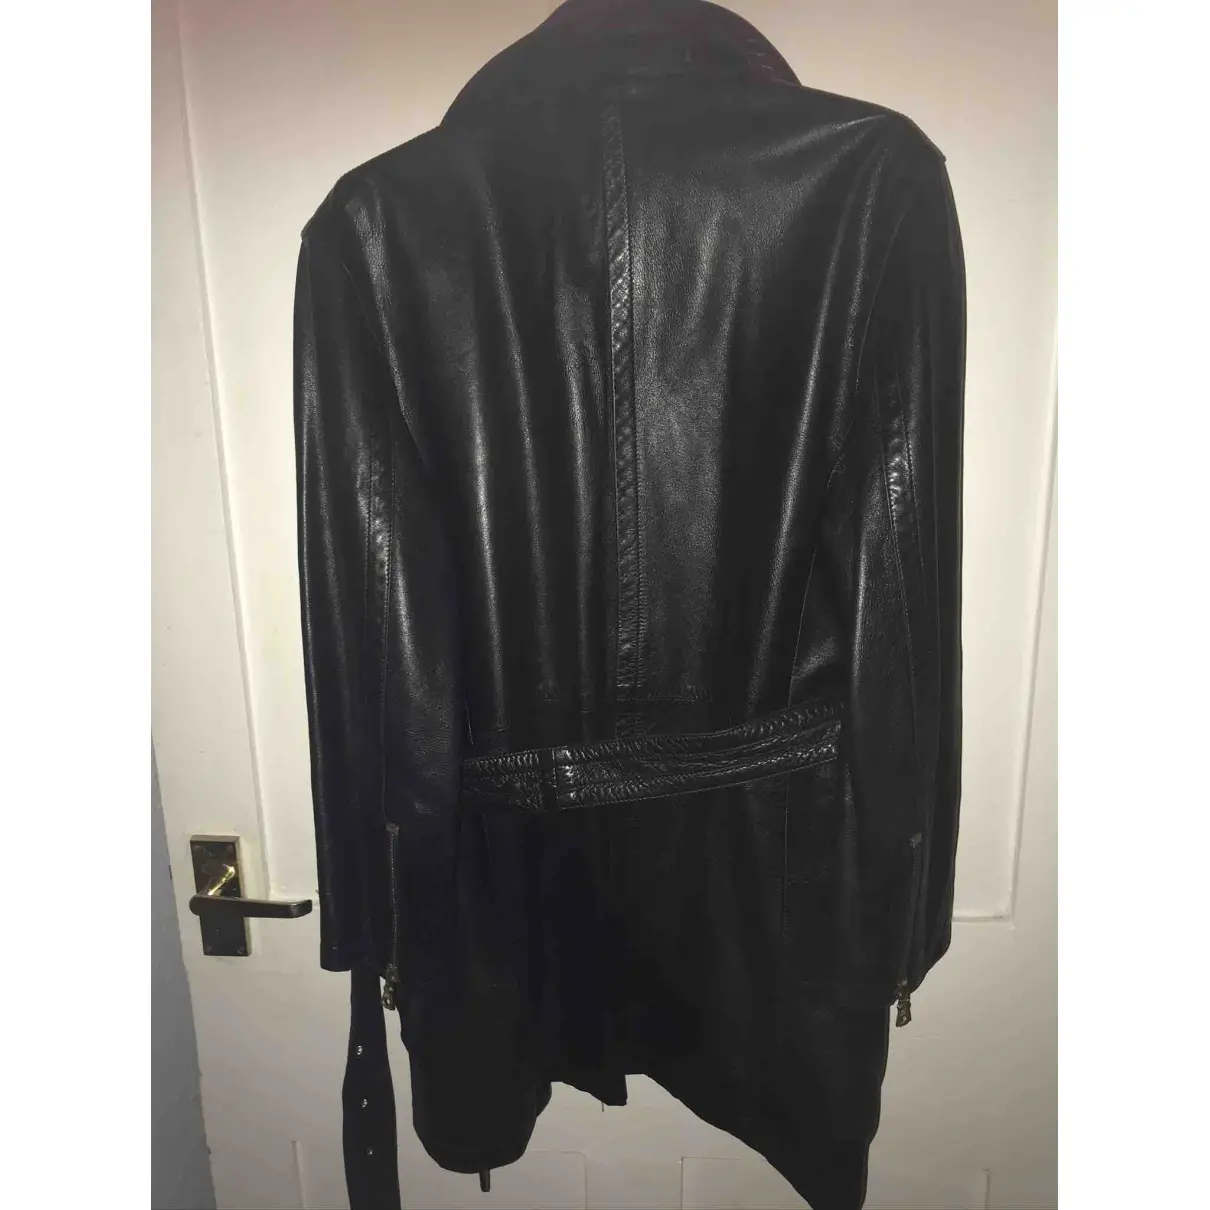 Buy Gucci Leather biker jacket online - Vintage